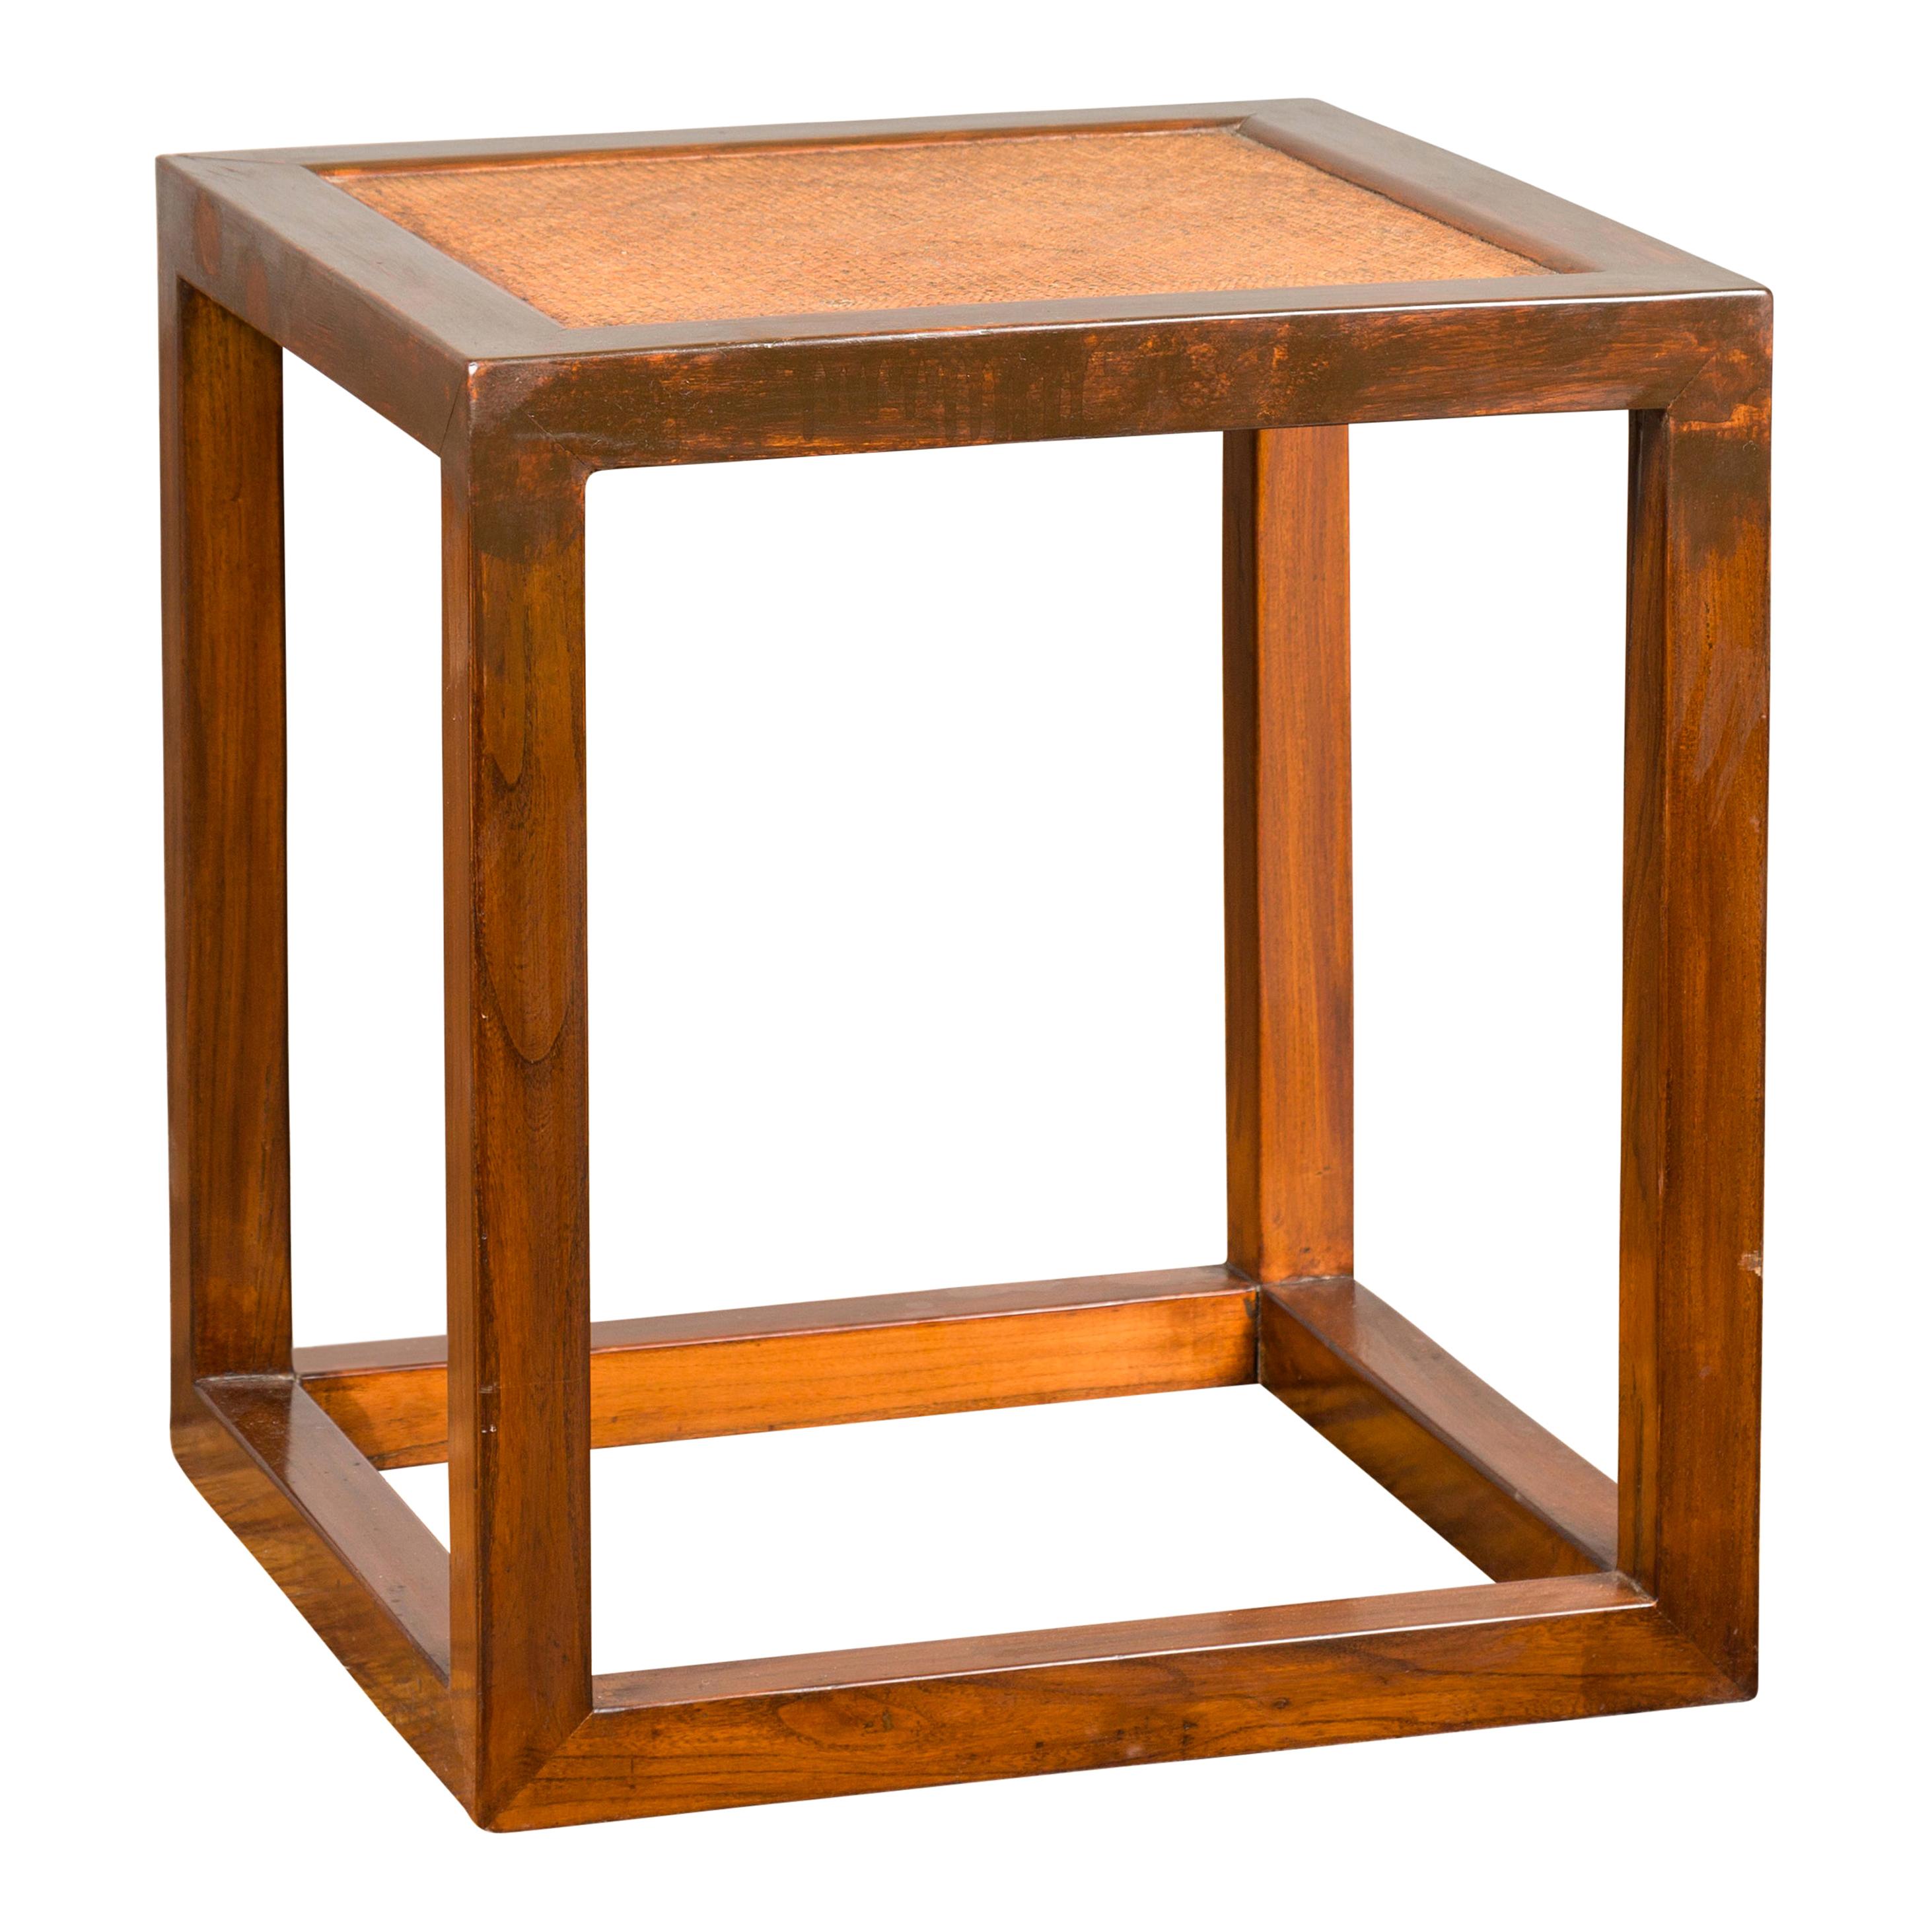 Table d'appoint cubique minimaliste avec plateau en rotin, pieds droits et traverses